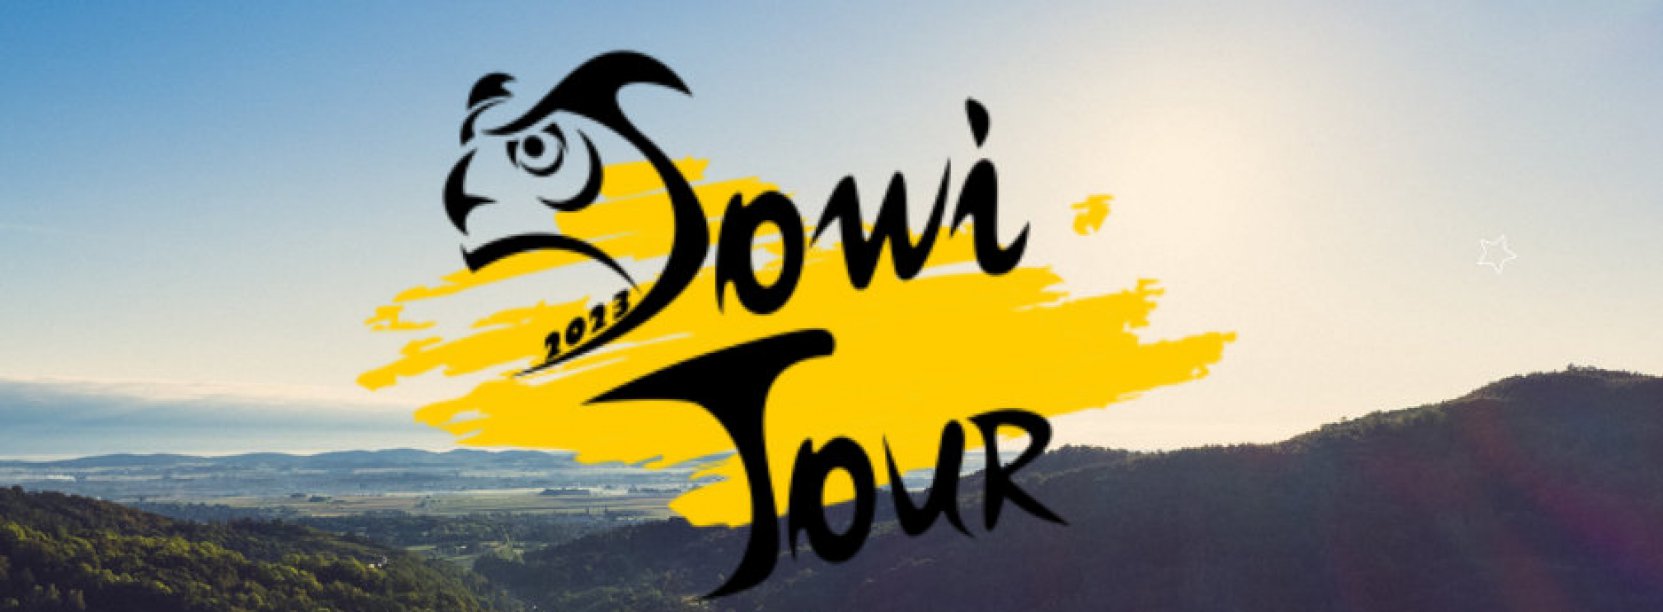 Panorama gór, niebieskie niebo, nałożone logo z rysunkiem sowi i napis Sowi Tour